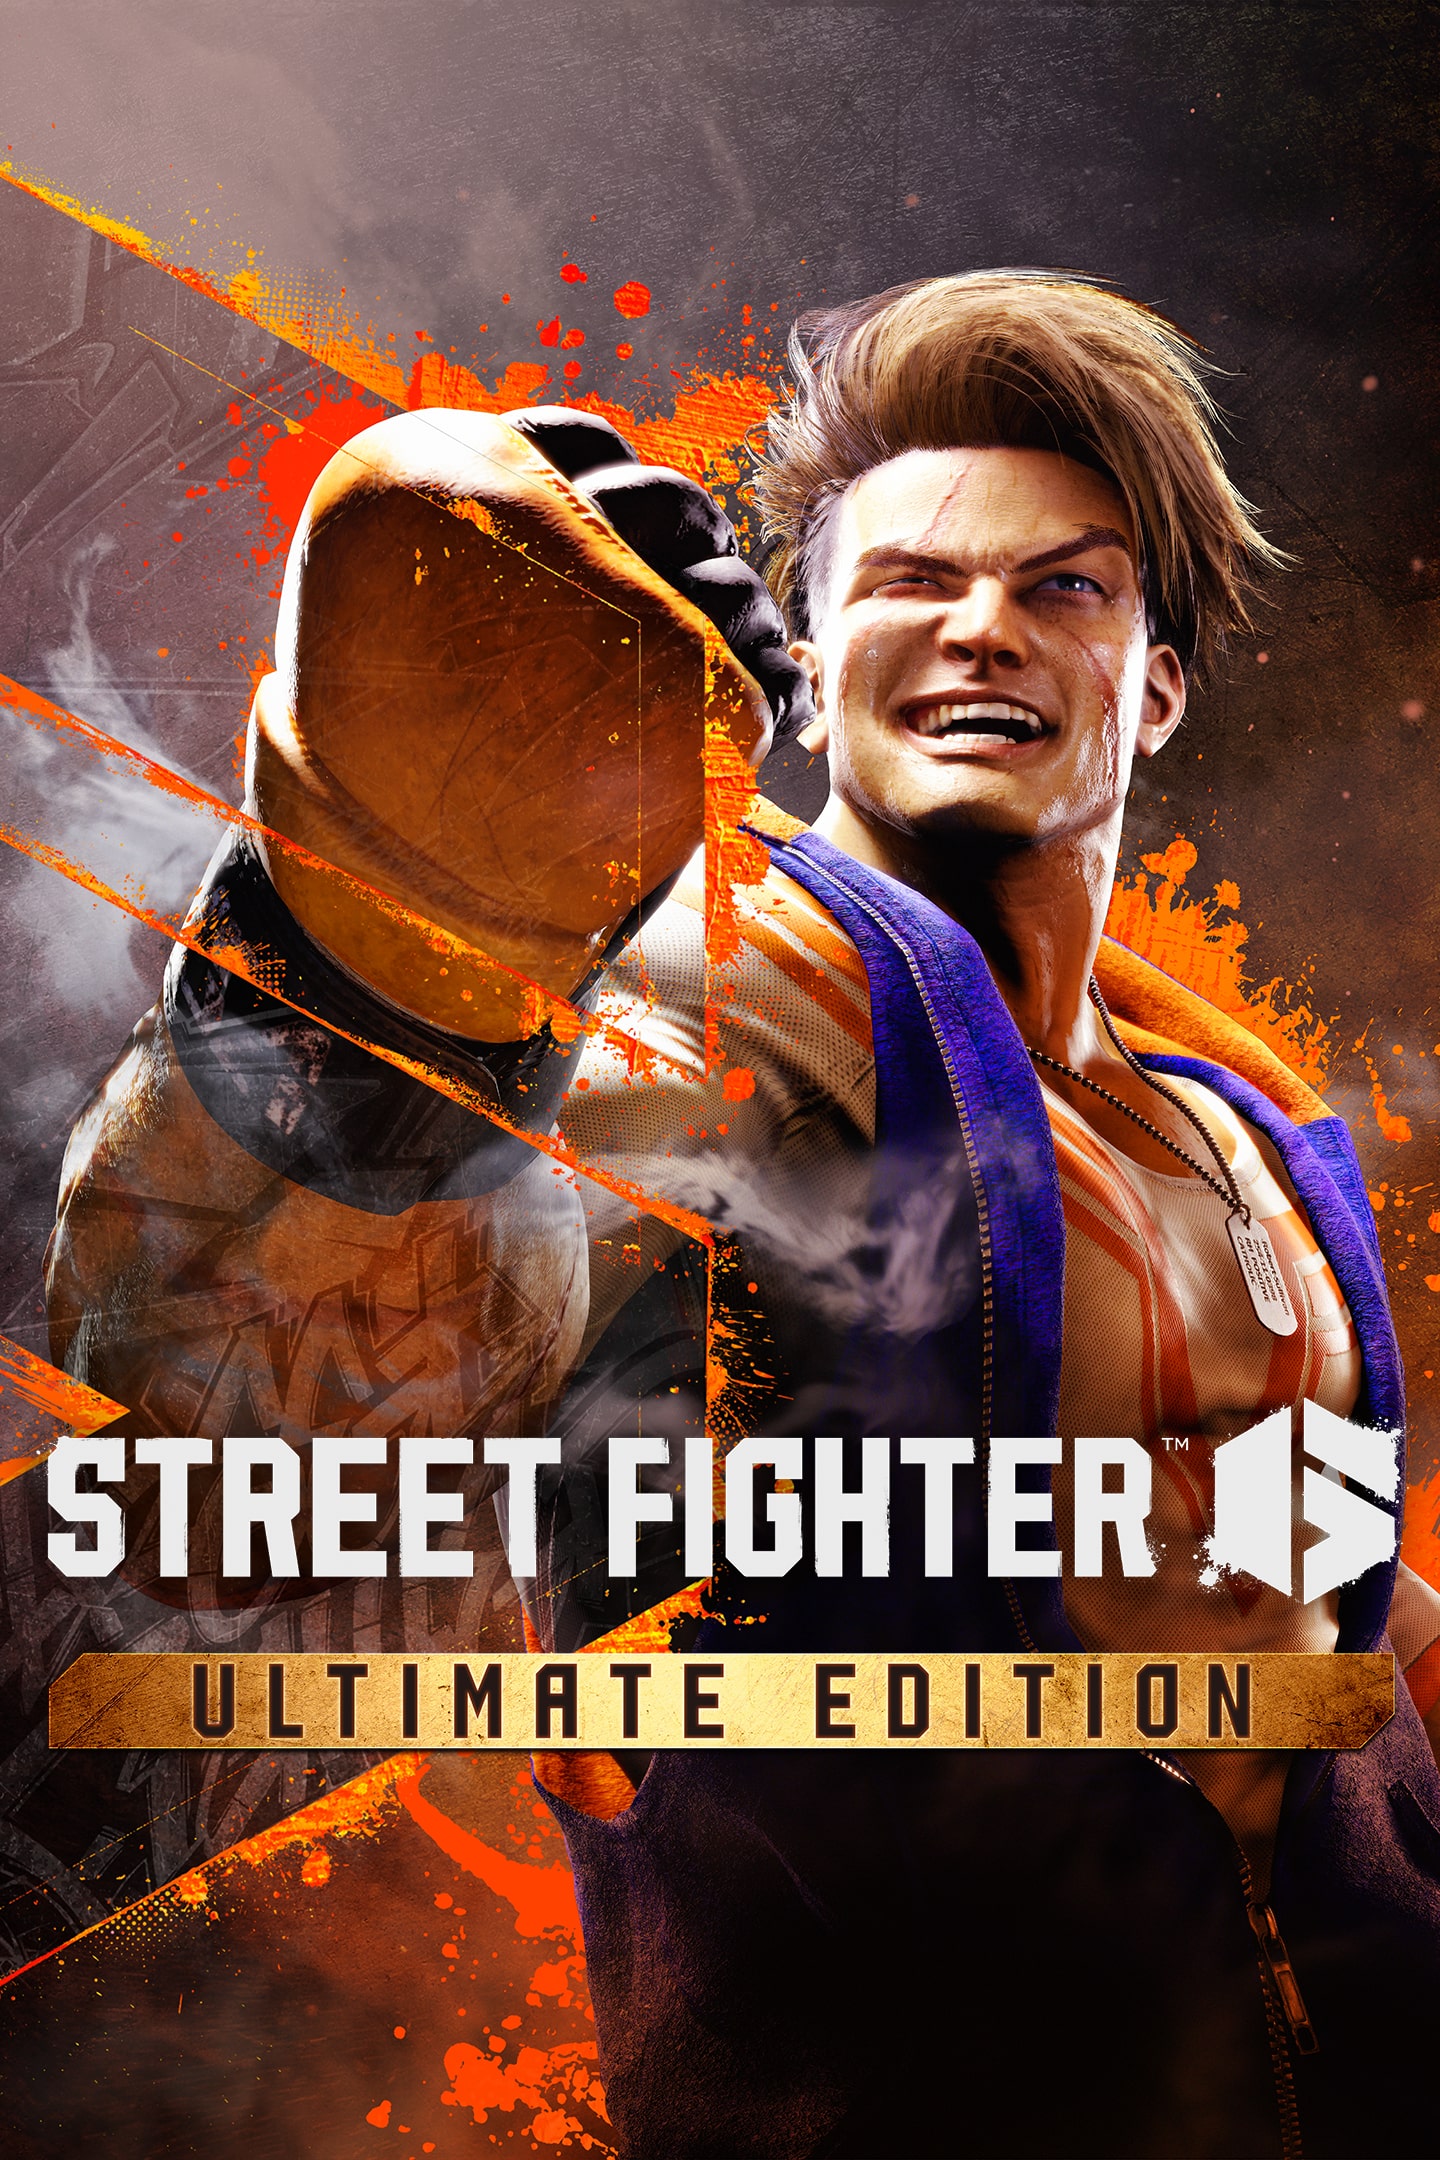 Street Fighter 6 - PS4 Mídia Física (Pré-Venda) - Mundo Joy Games - Venda,  Compra e Assistência em Games e Informática